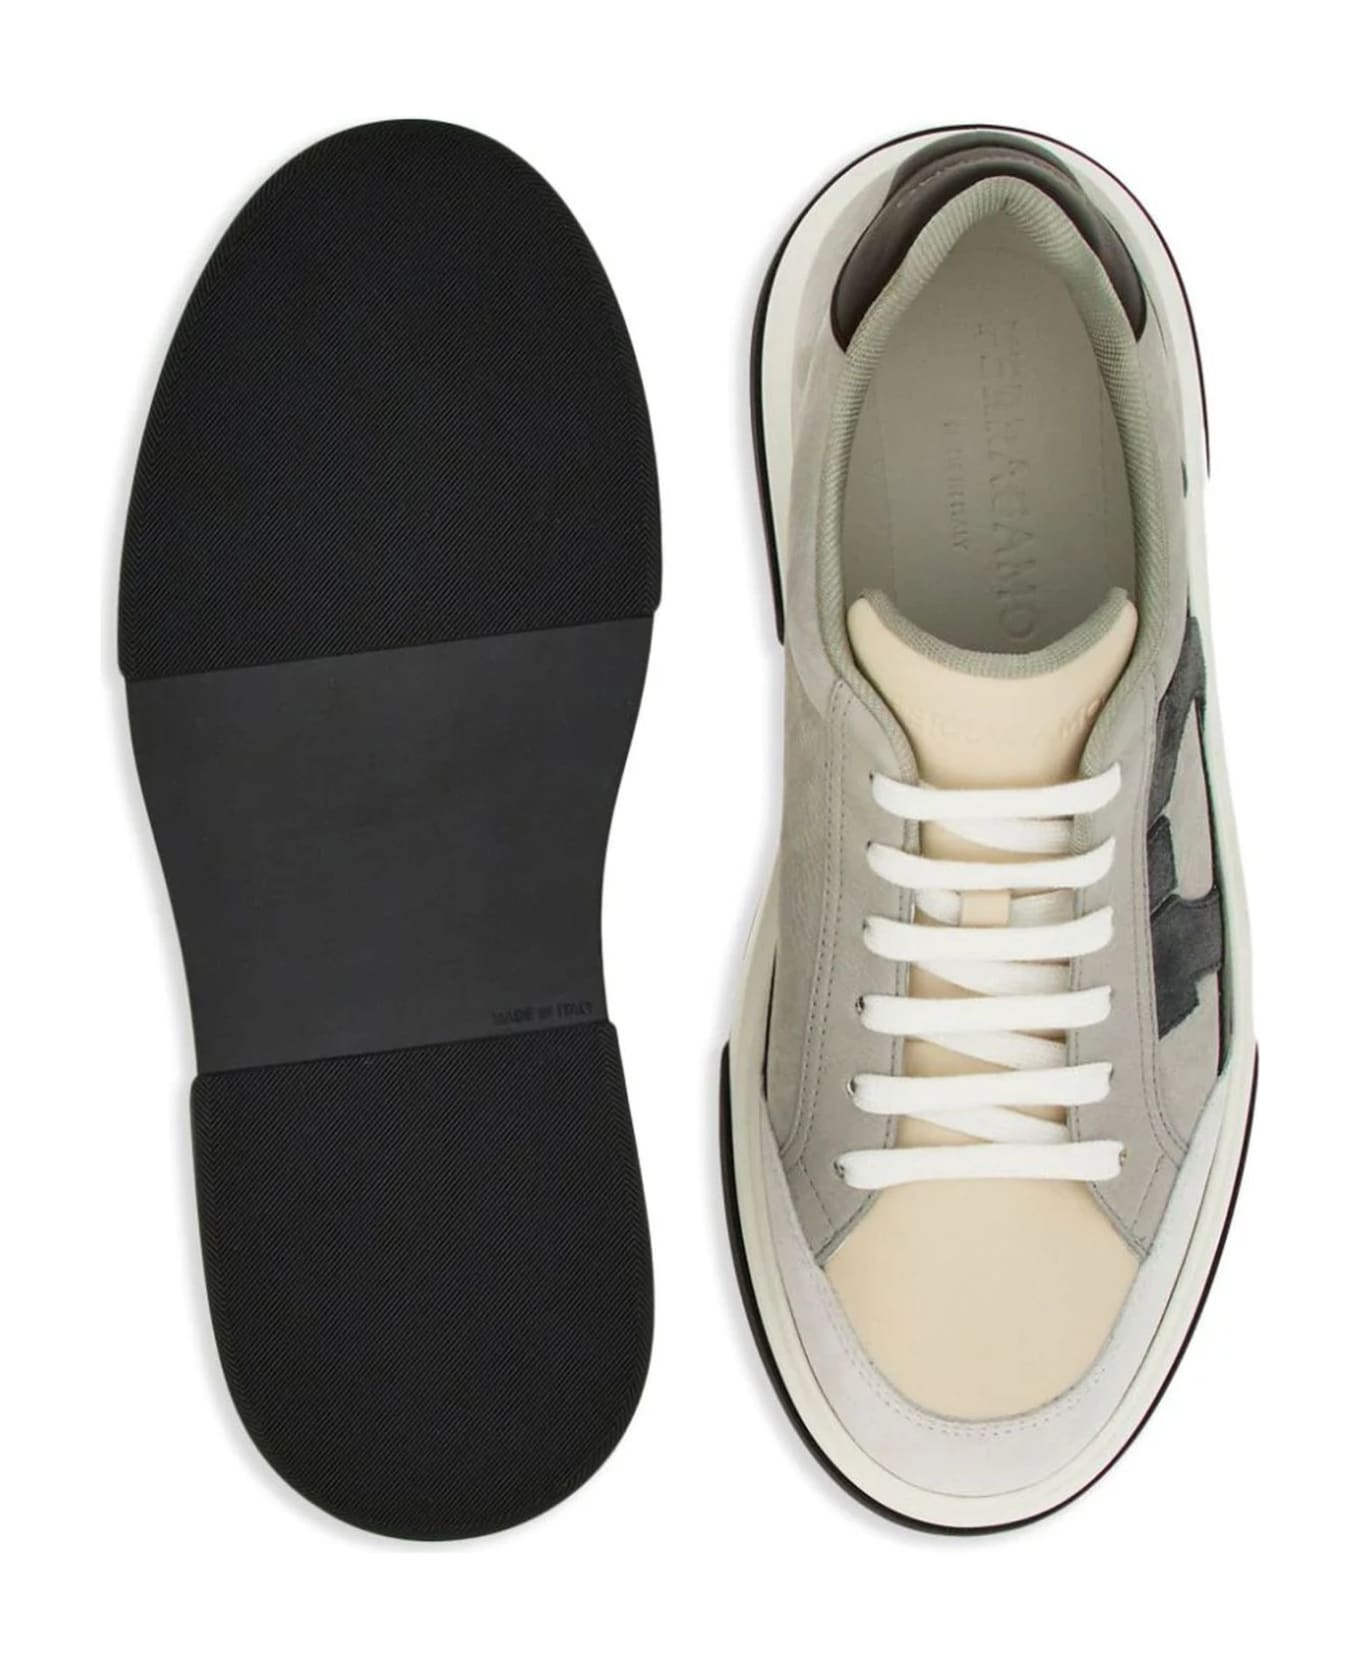 Ferragamo Grey Low Cut Sneaker - Grey